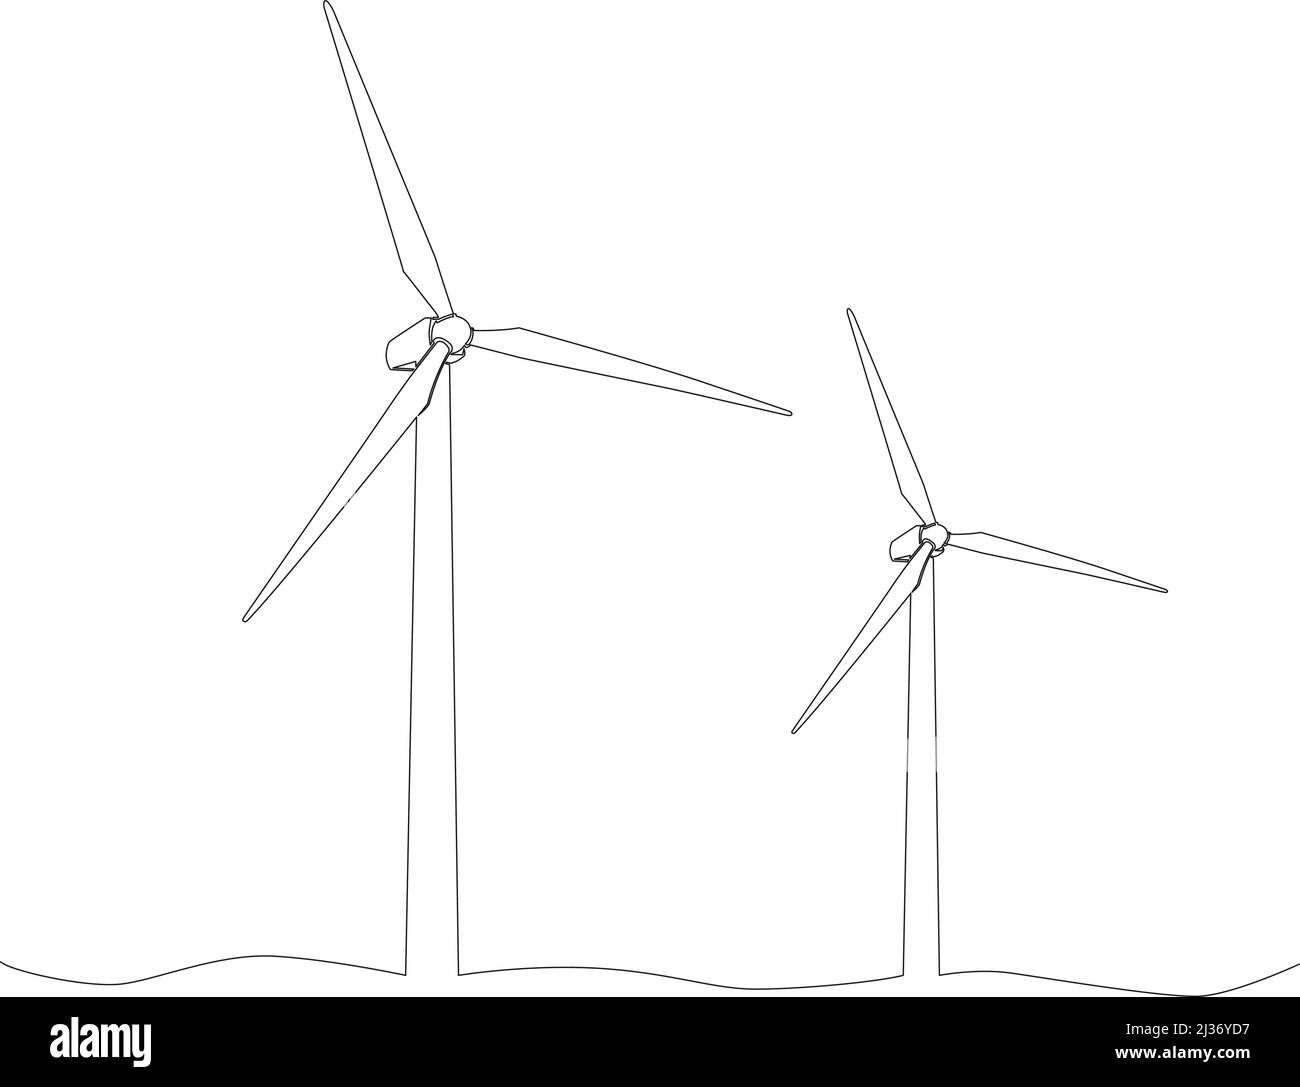 dessin d'une seule ligne d'éoliennes isolées sur fond blanc, illustration vectorielle continue tracée à la main Illustration de Vecteur